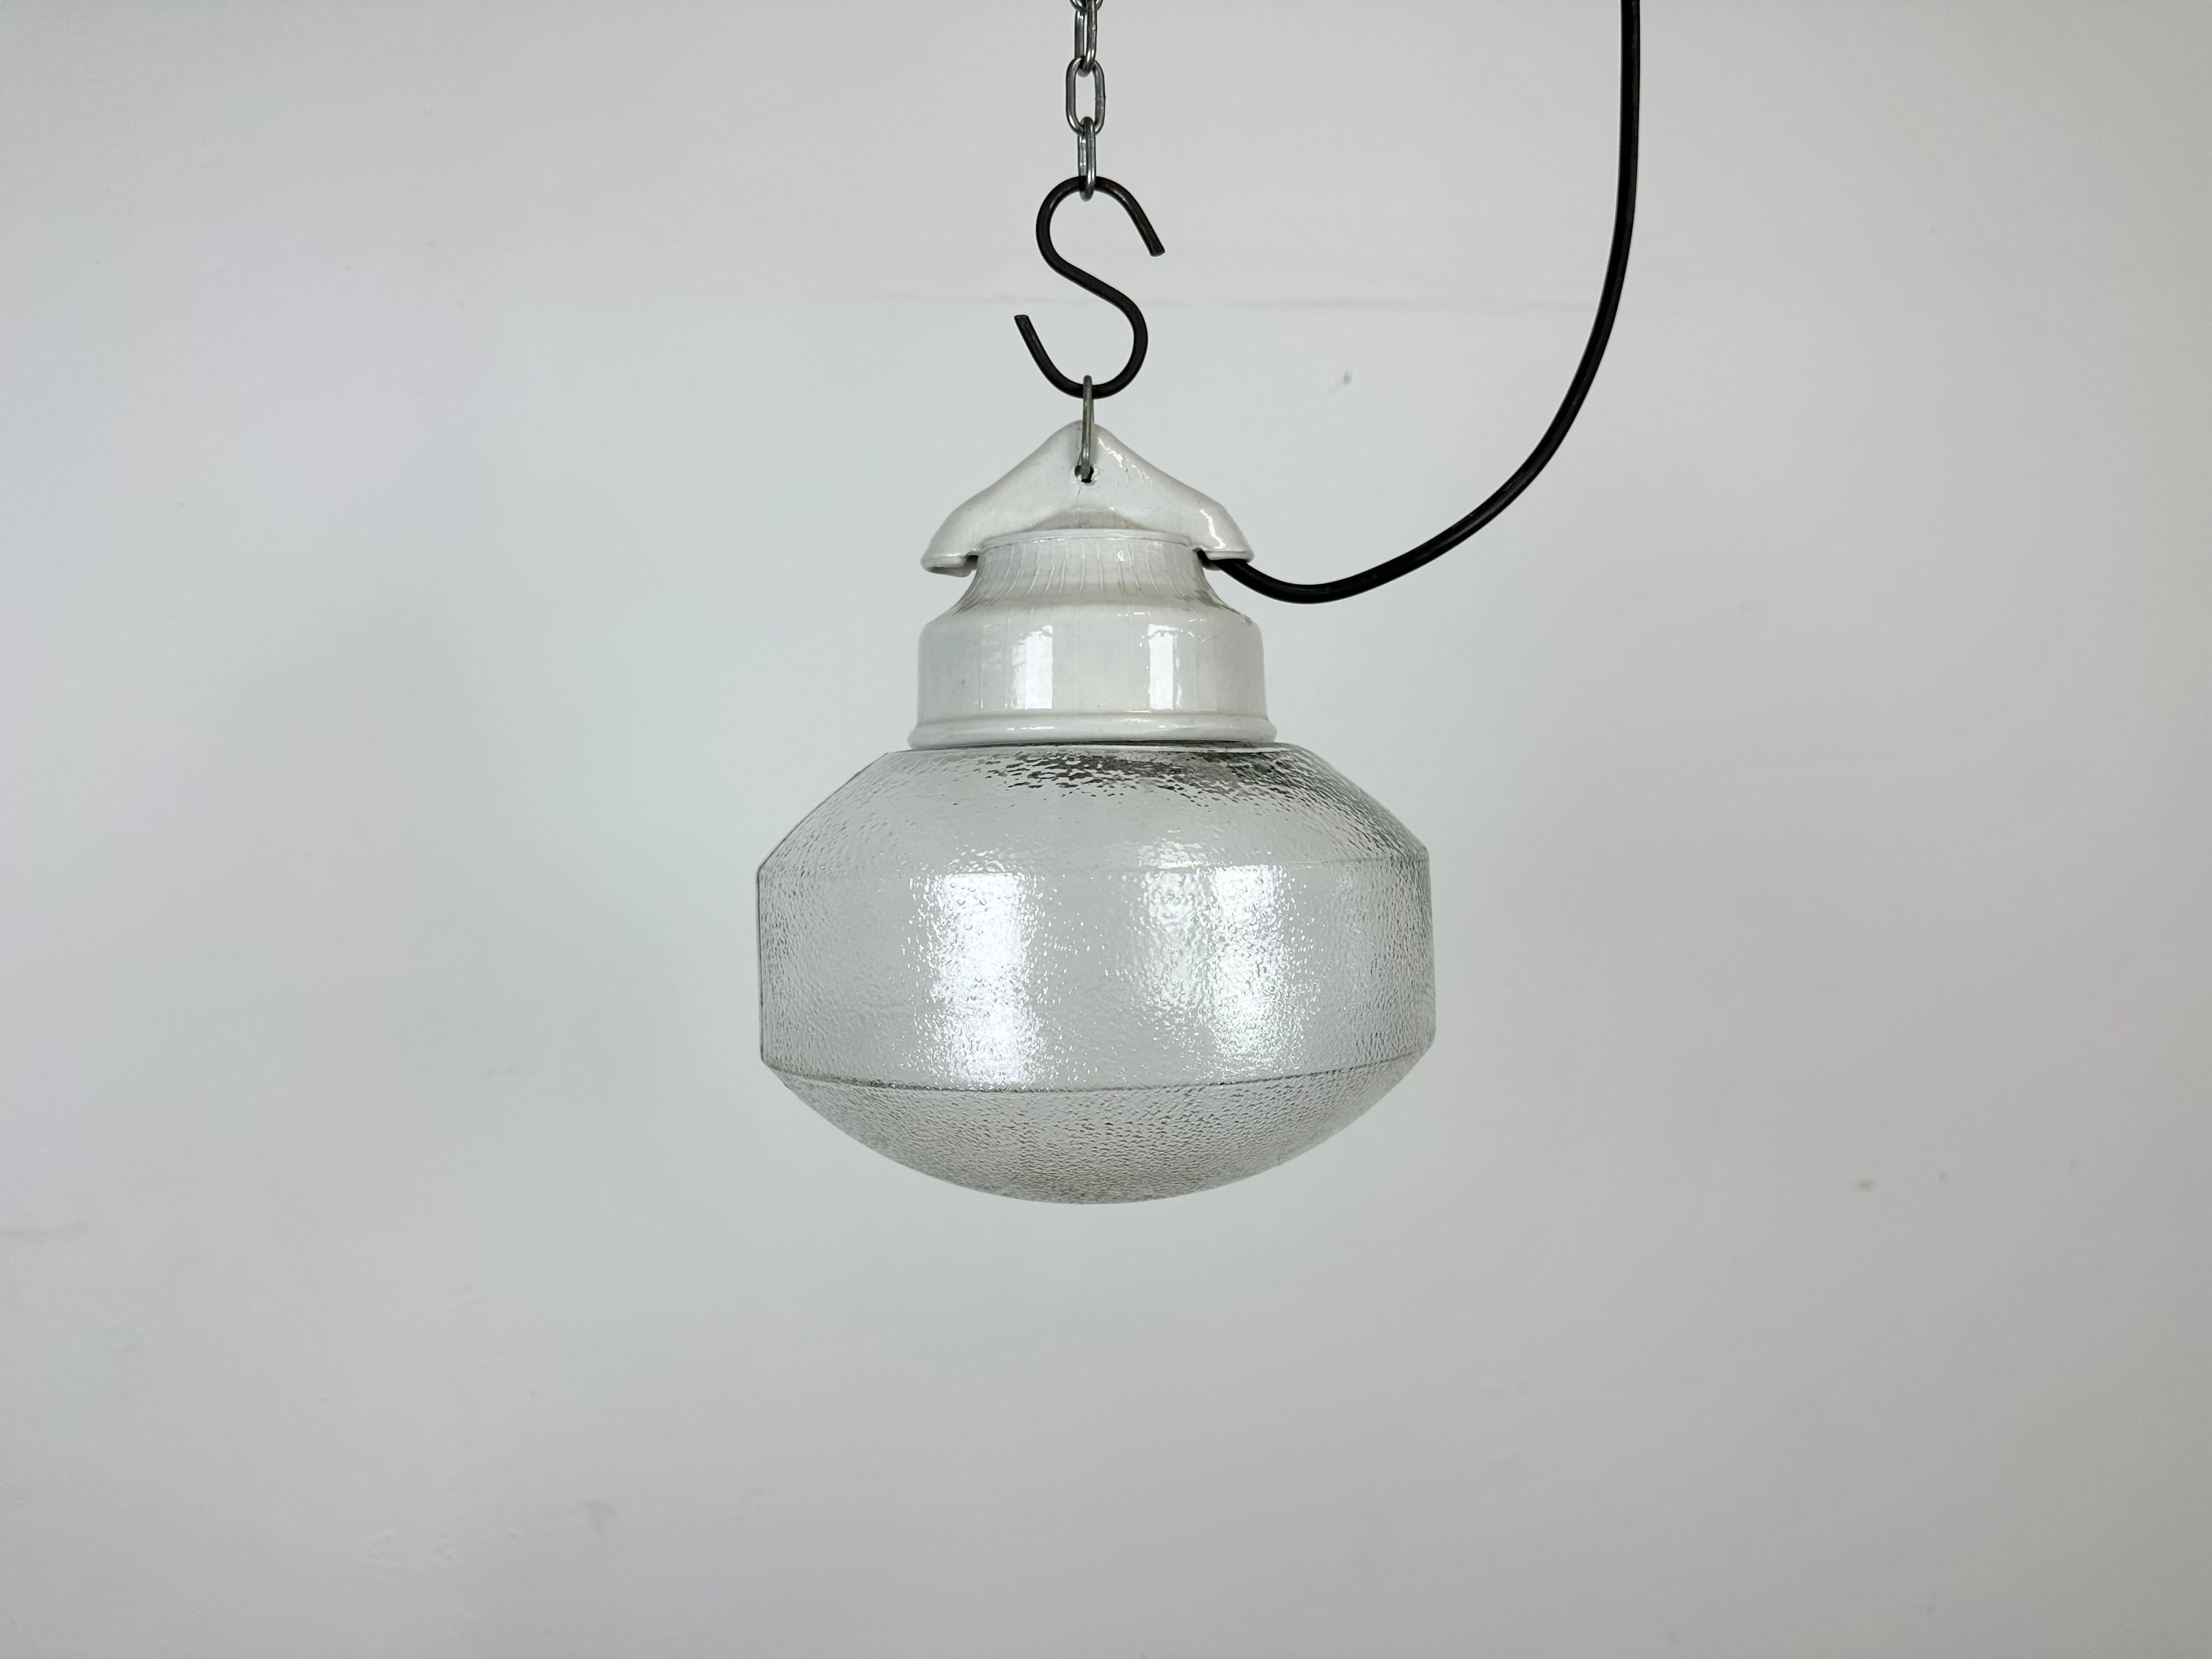 Lampe industrielle vintage fabriquée en Pologne dans les années 1970. Il est doté d'un plateau en porcelaine blanche et d'un couvercle en verre dépoli. La douille nécessite des ampoules E27/ E26. Un nouveau fil. Le poids de la lampe est de 1,2